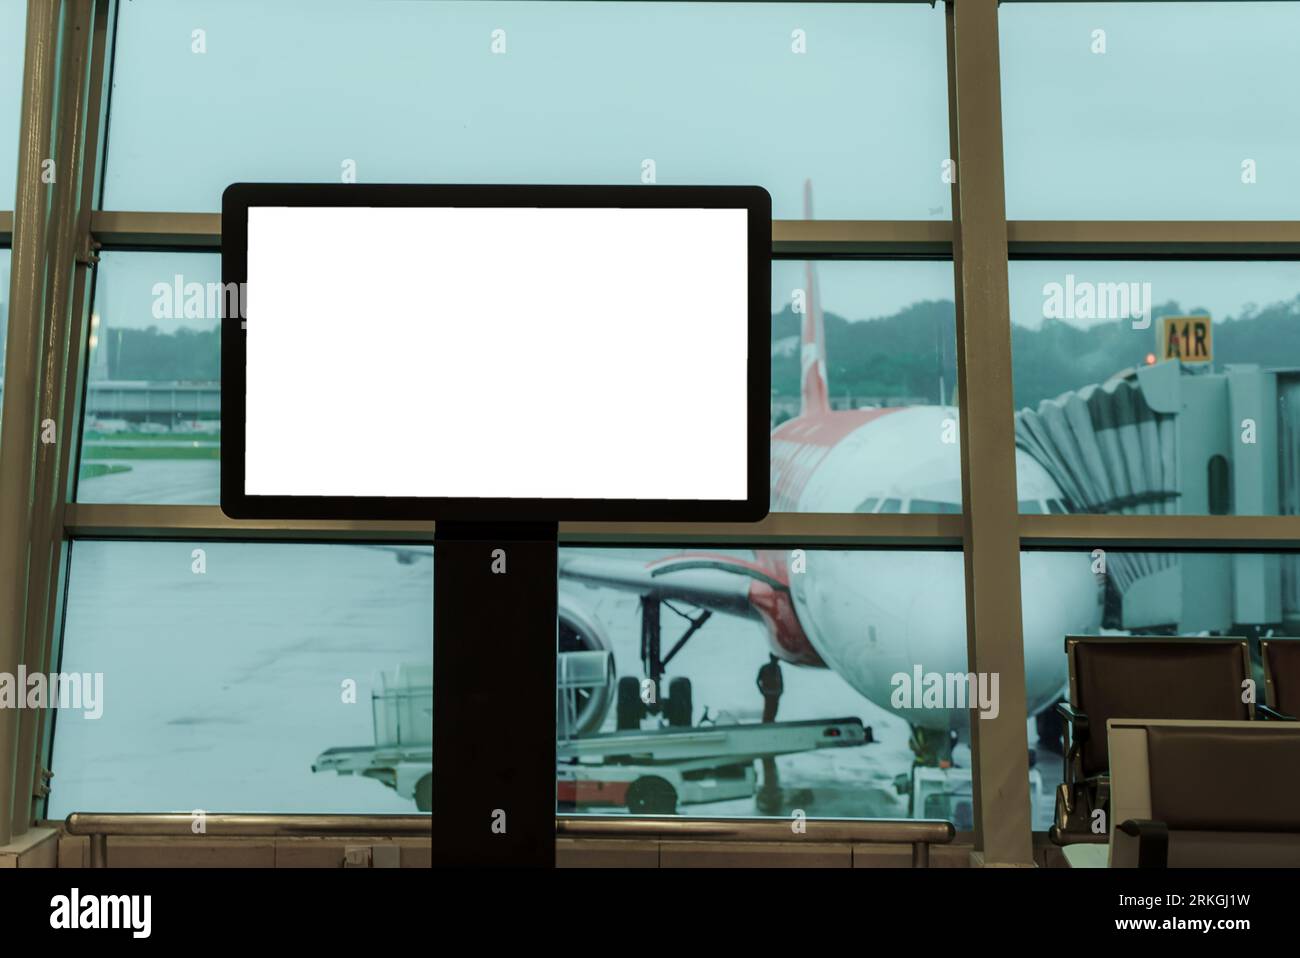 Un panneau d'affichage vide à l'aéroport, accompagné de sièges, présente un arrière-plan d'avion subtil, offrant un espace privilégié pour mettre en valeur votre message. Banque D'Images